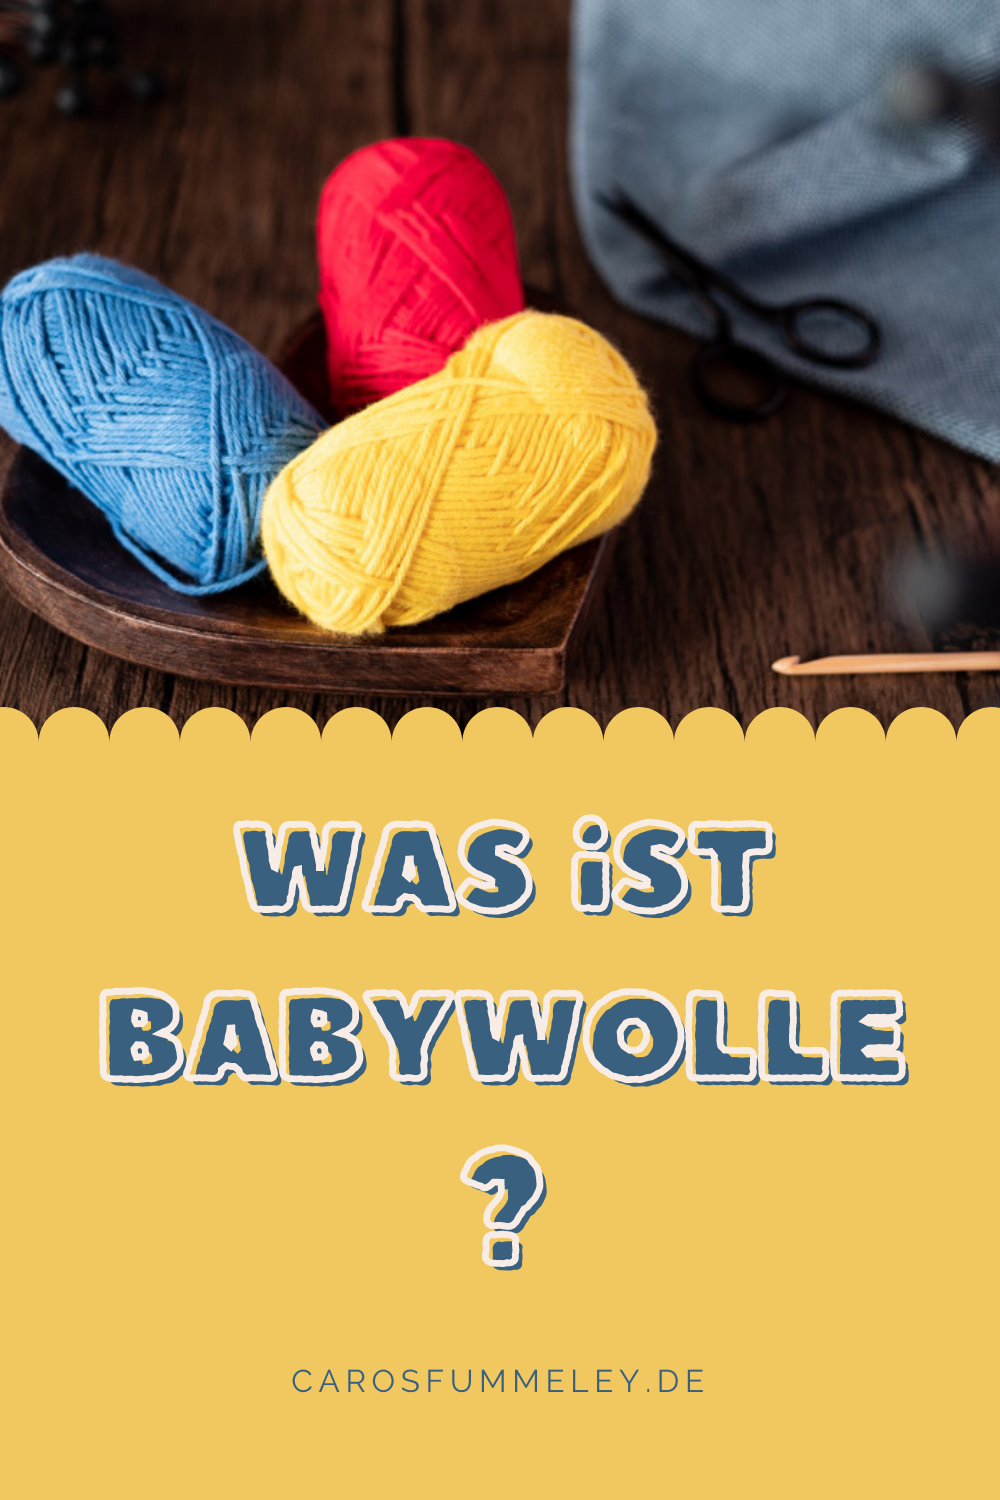 Was ist Babywolle?